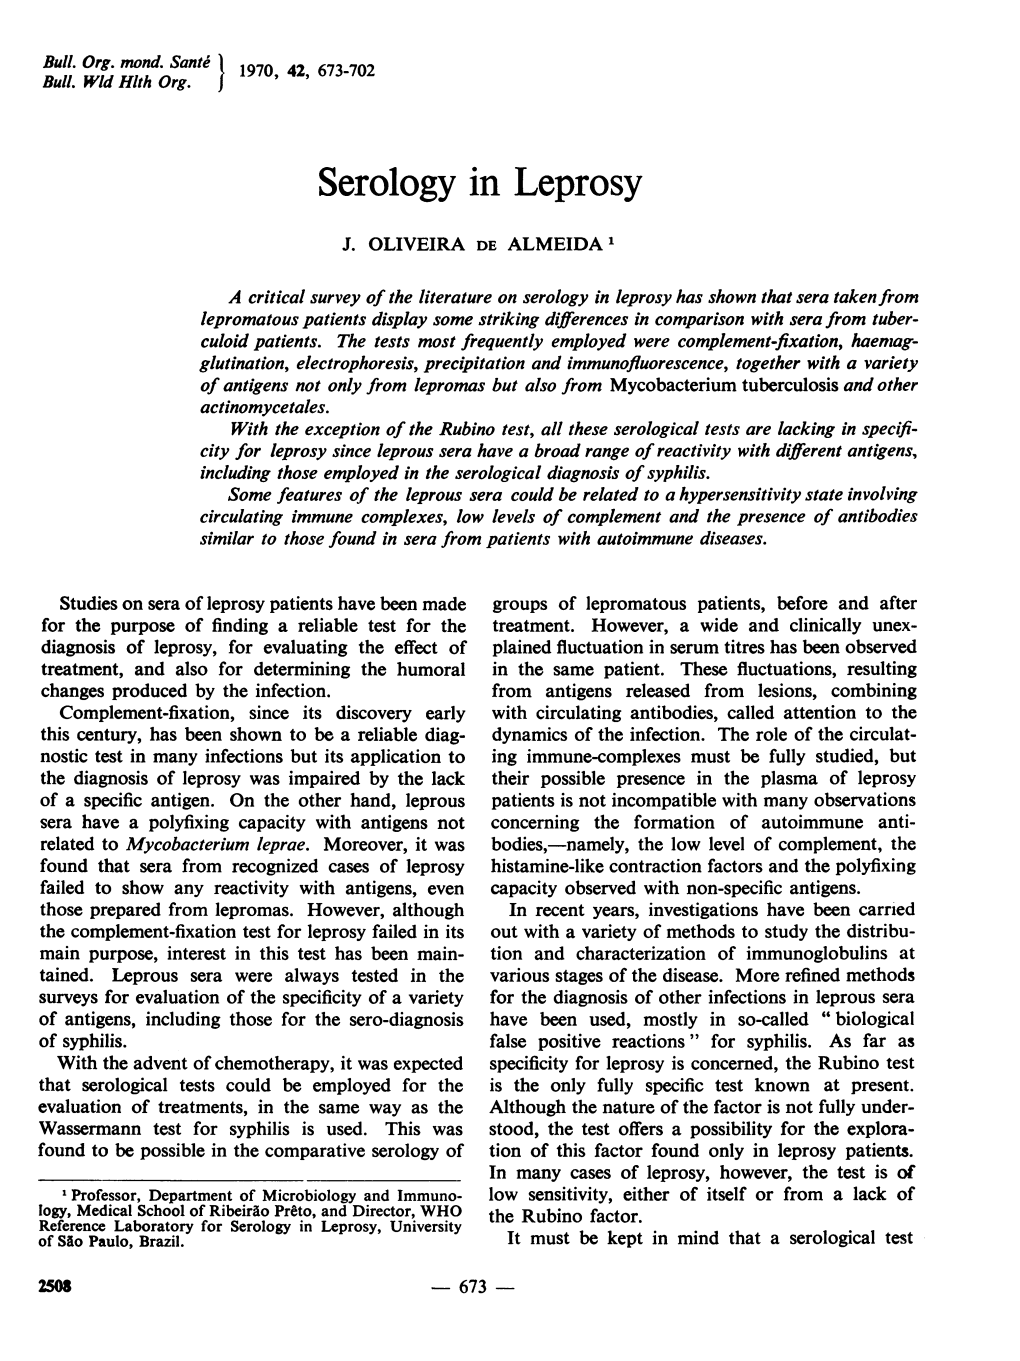 Serology in Leprosy